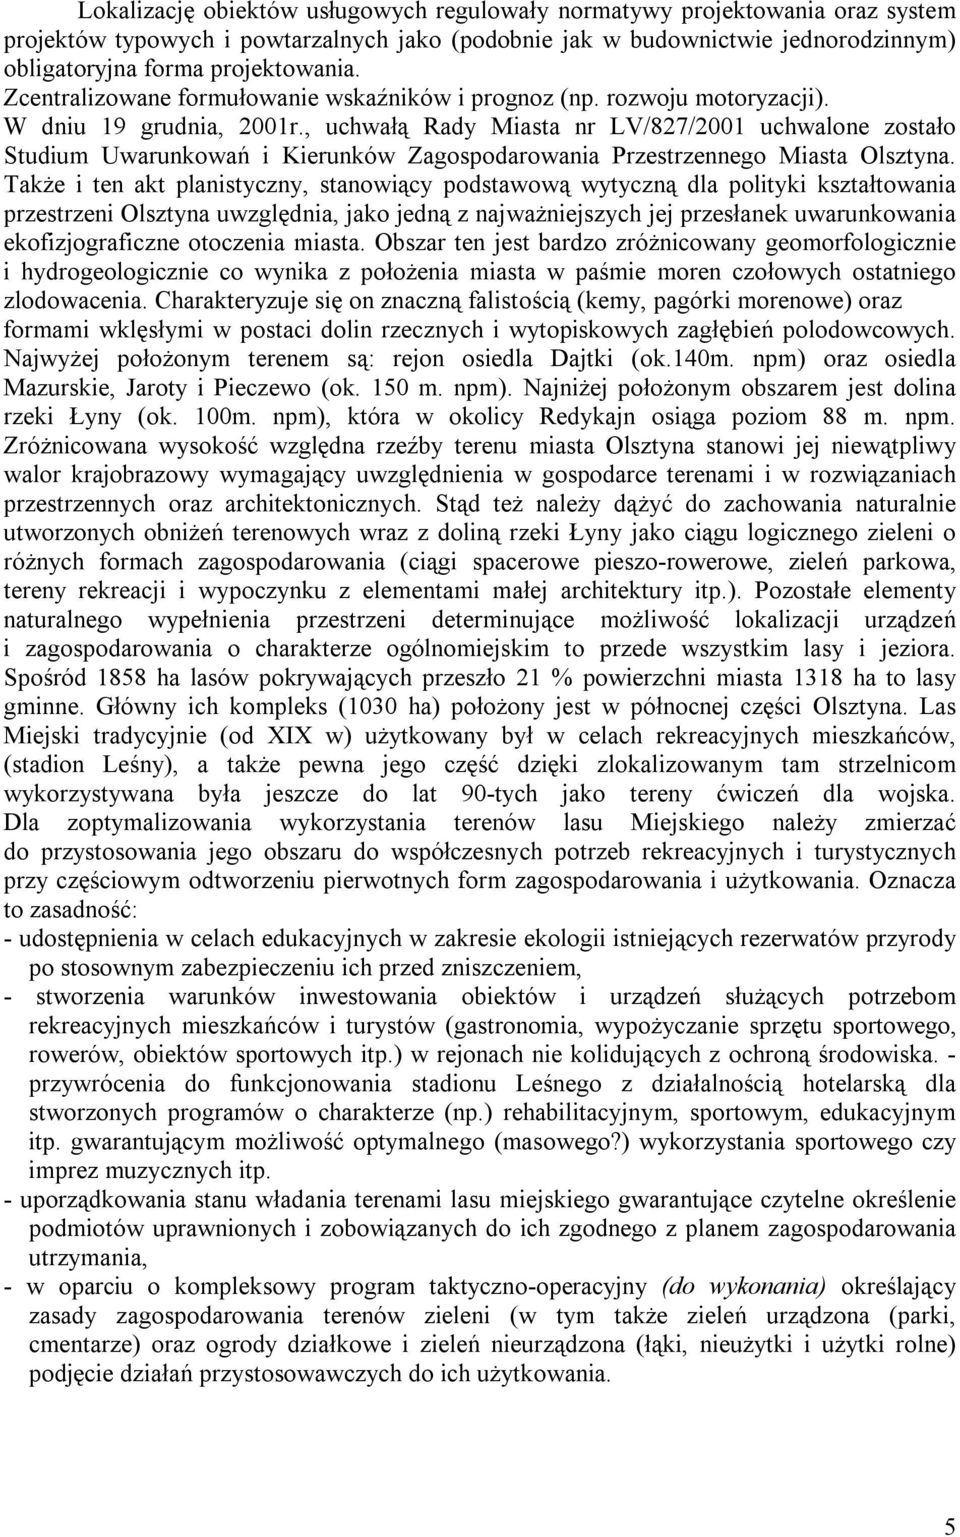 , uchwałą Rady Miasta nr LV/827/2001 uchwalone zostało Studium Uwarunkowań i Kierunków Zagospodarowania Przestrzennego Miasta Olsztyna.